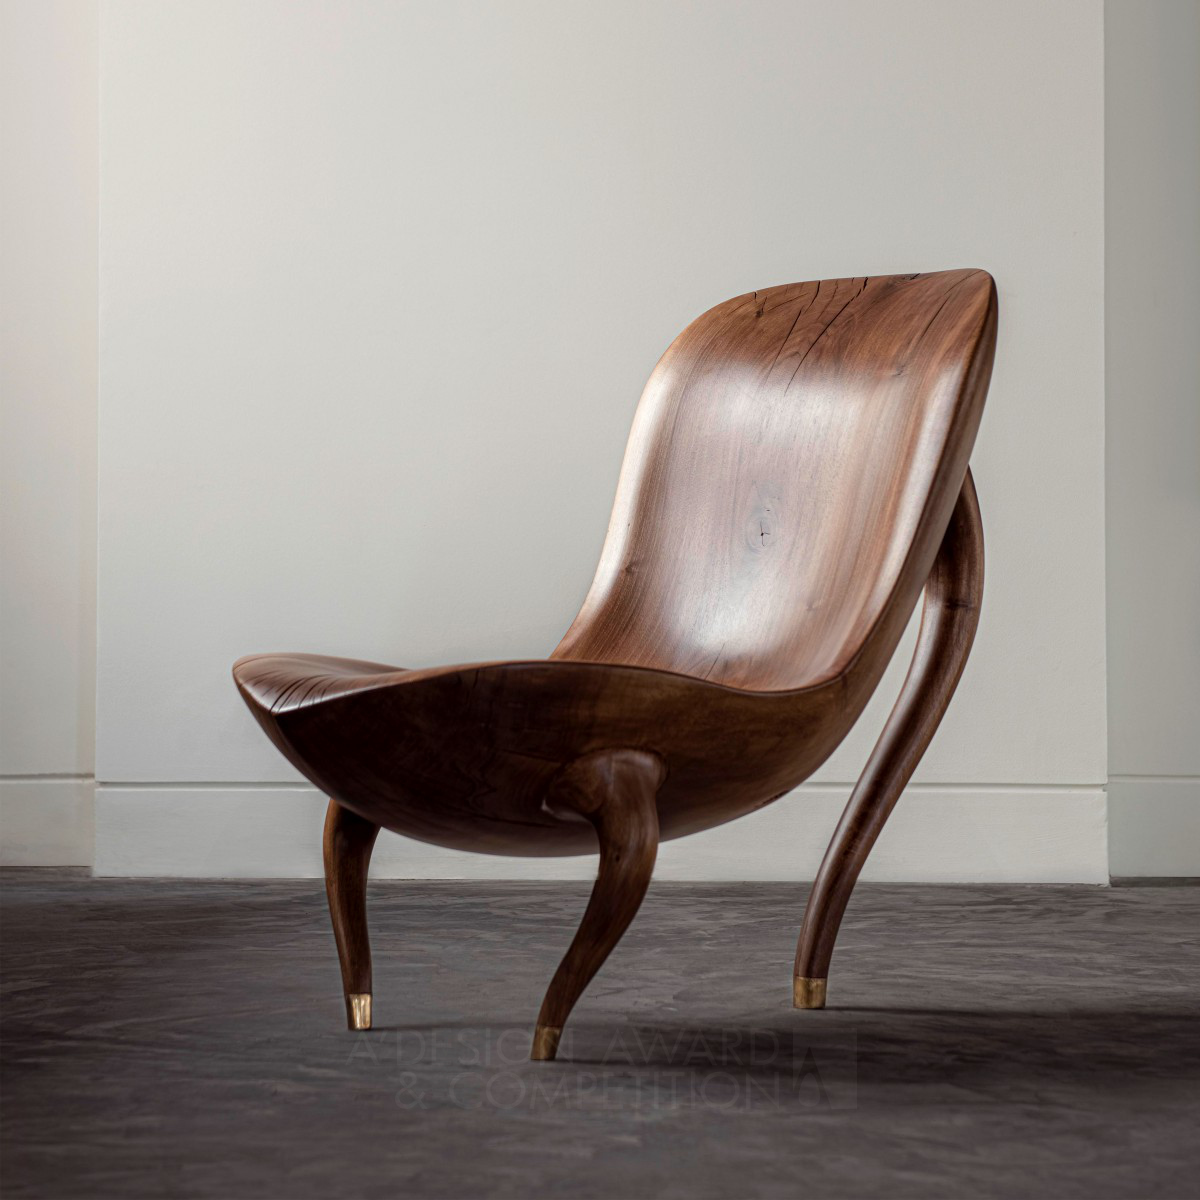 Gis: A Sculptural Wooden Chair